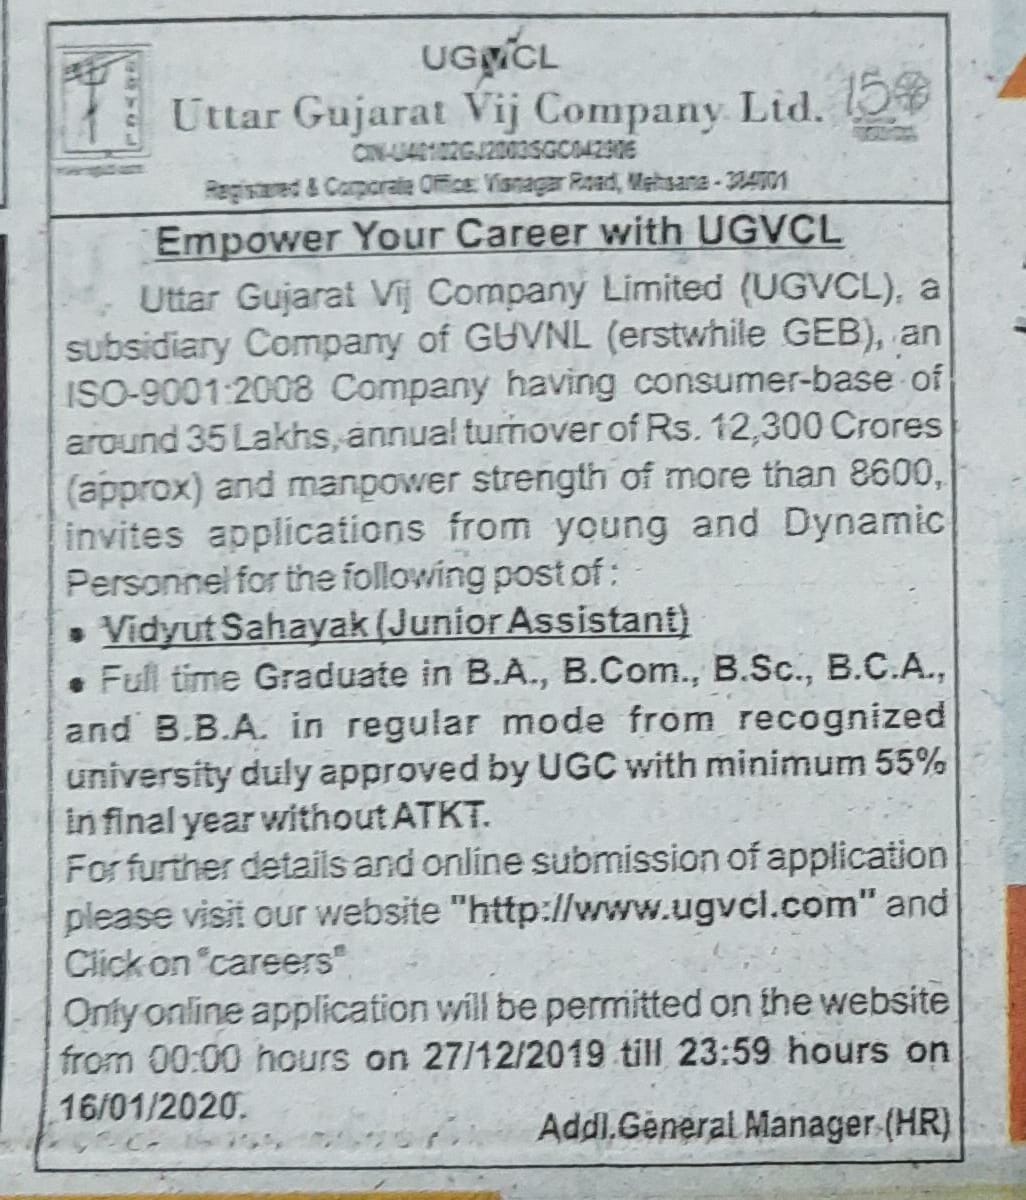 UGVCL Vidyut Sahayak Recruitment 2019